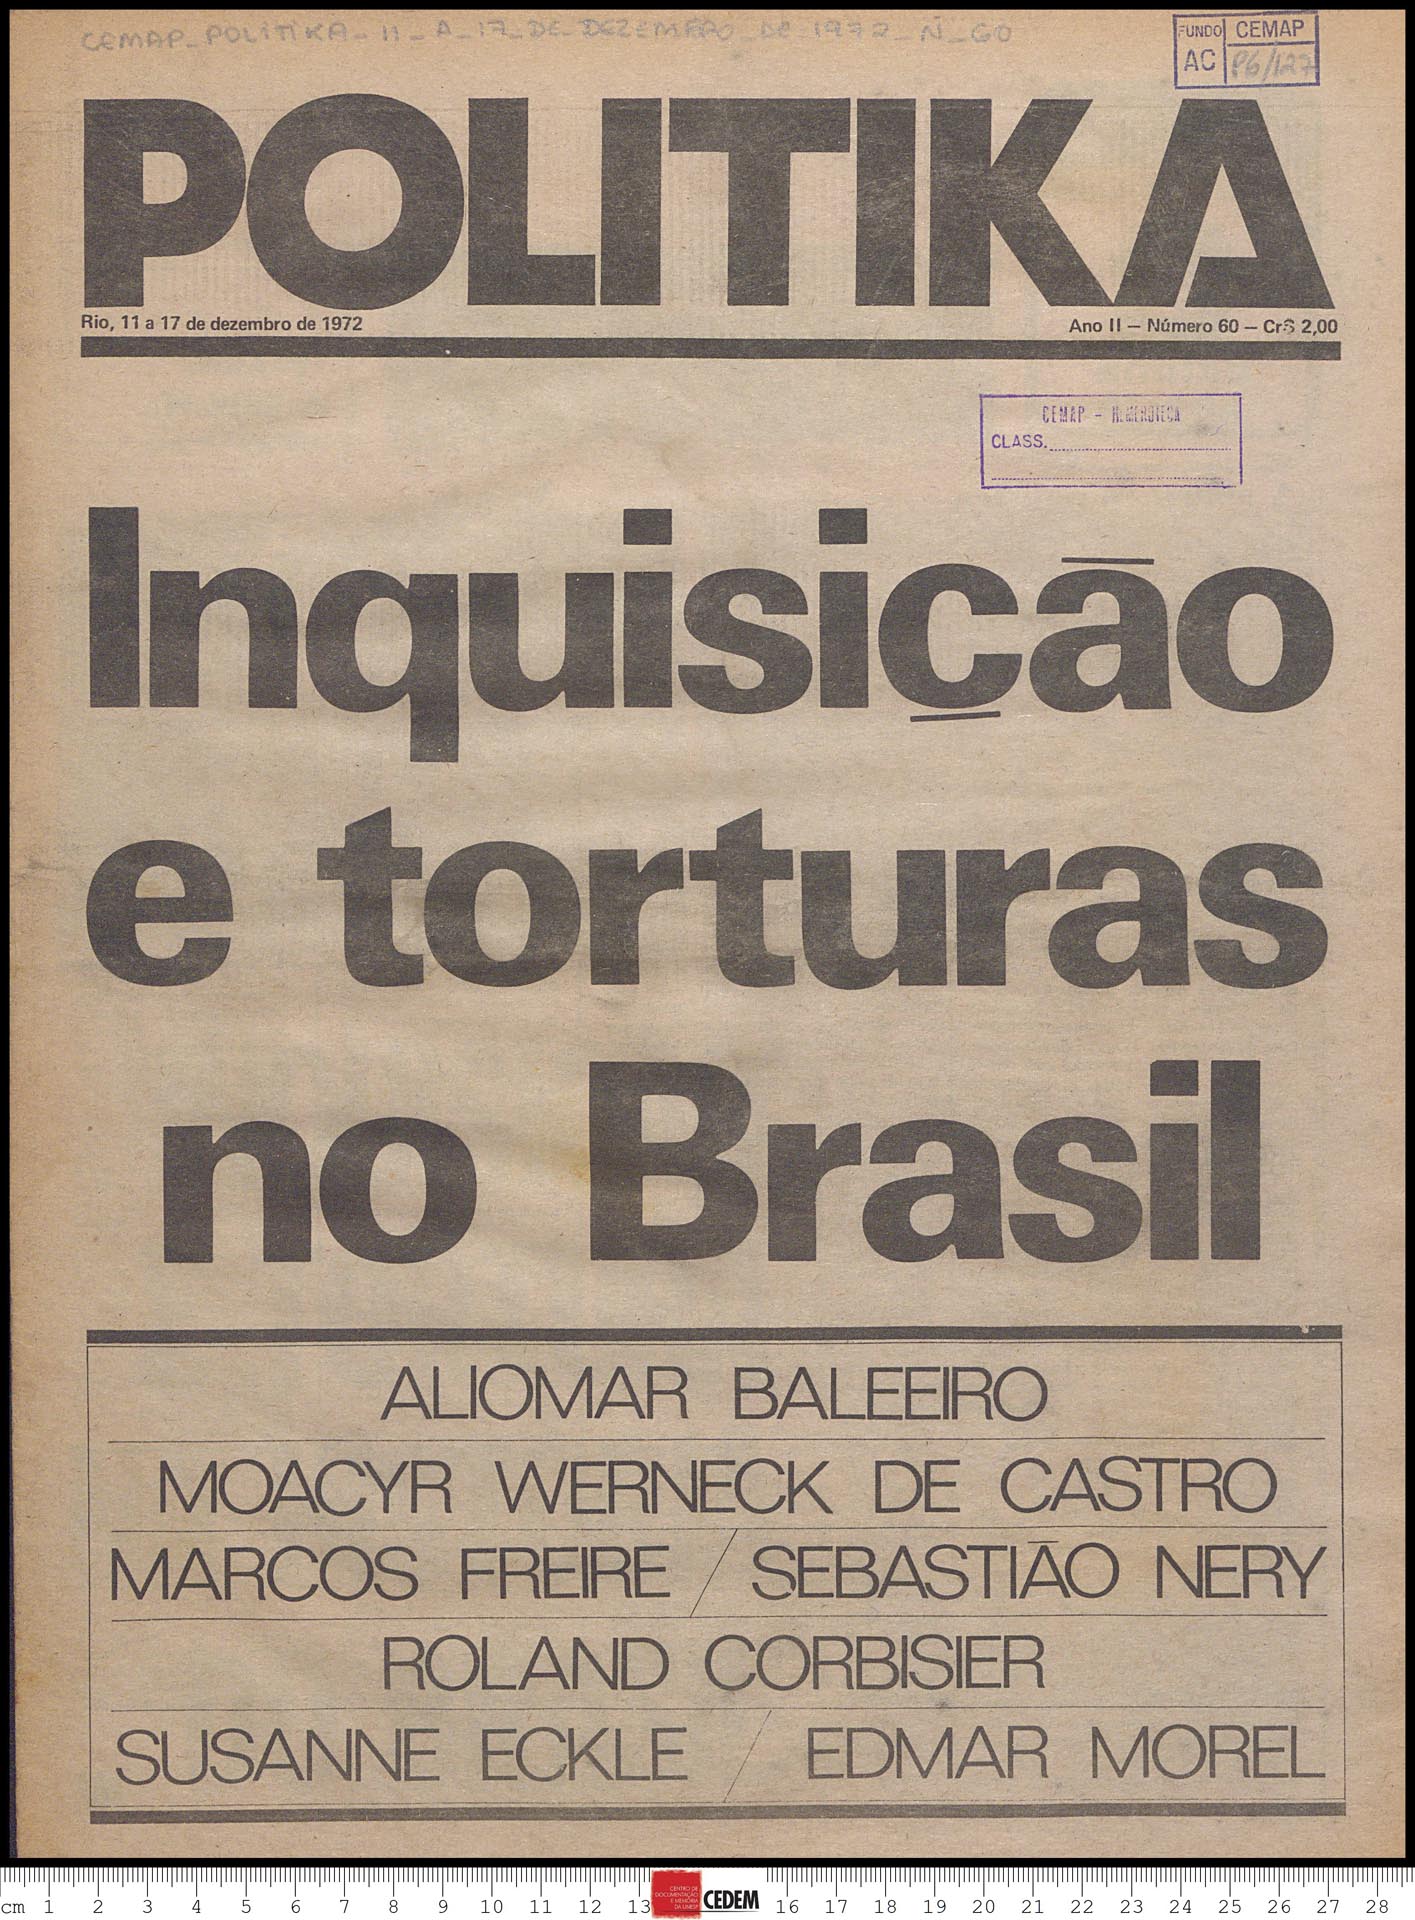 Politika - 60 - 11 a 17 de dez. 1972